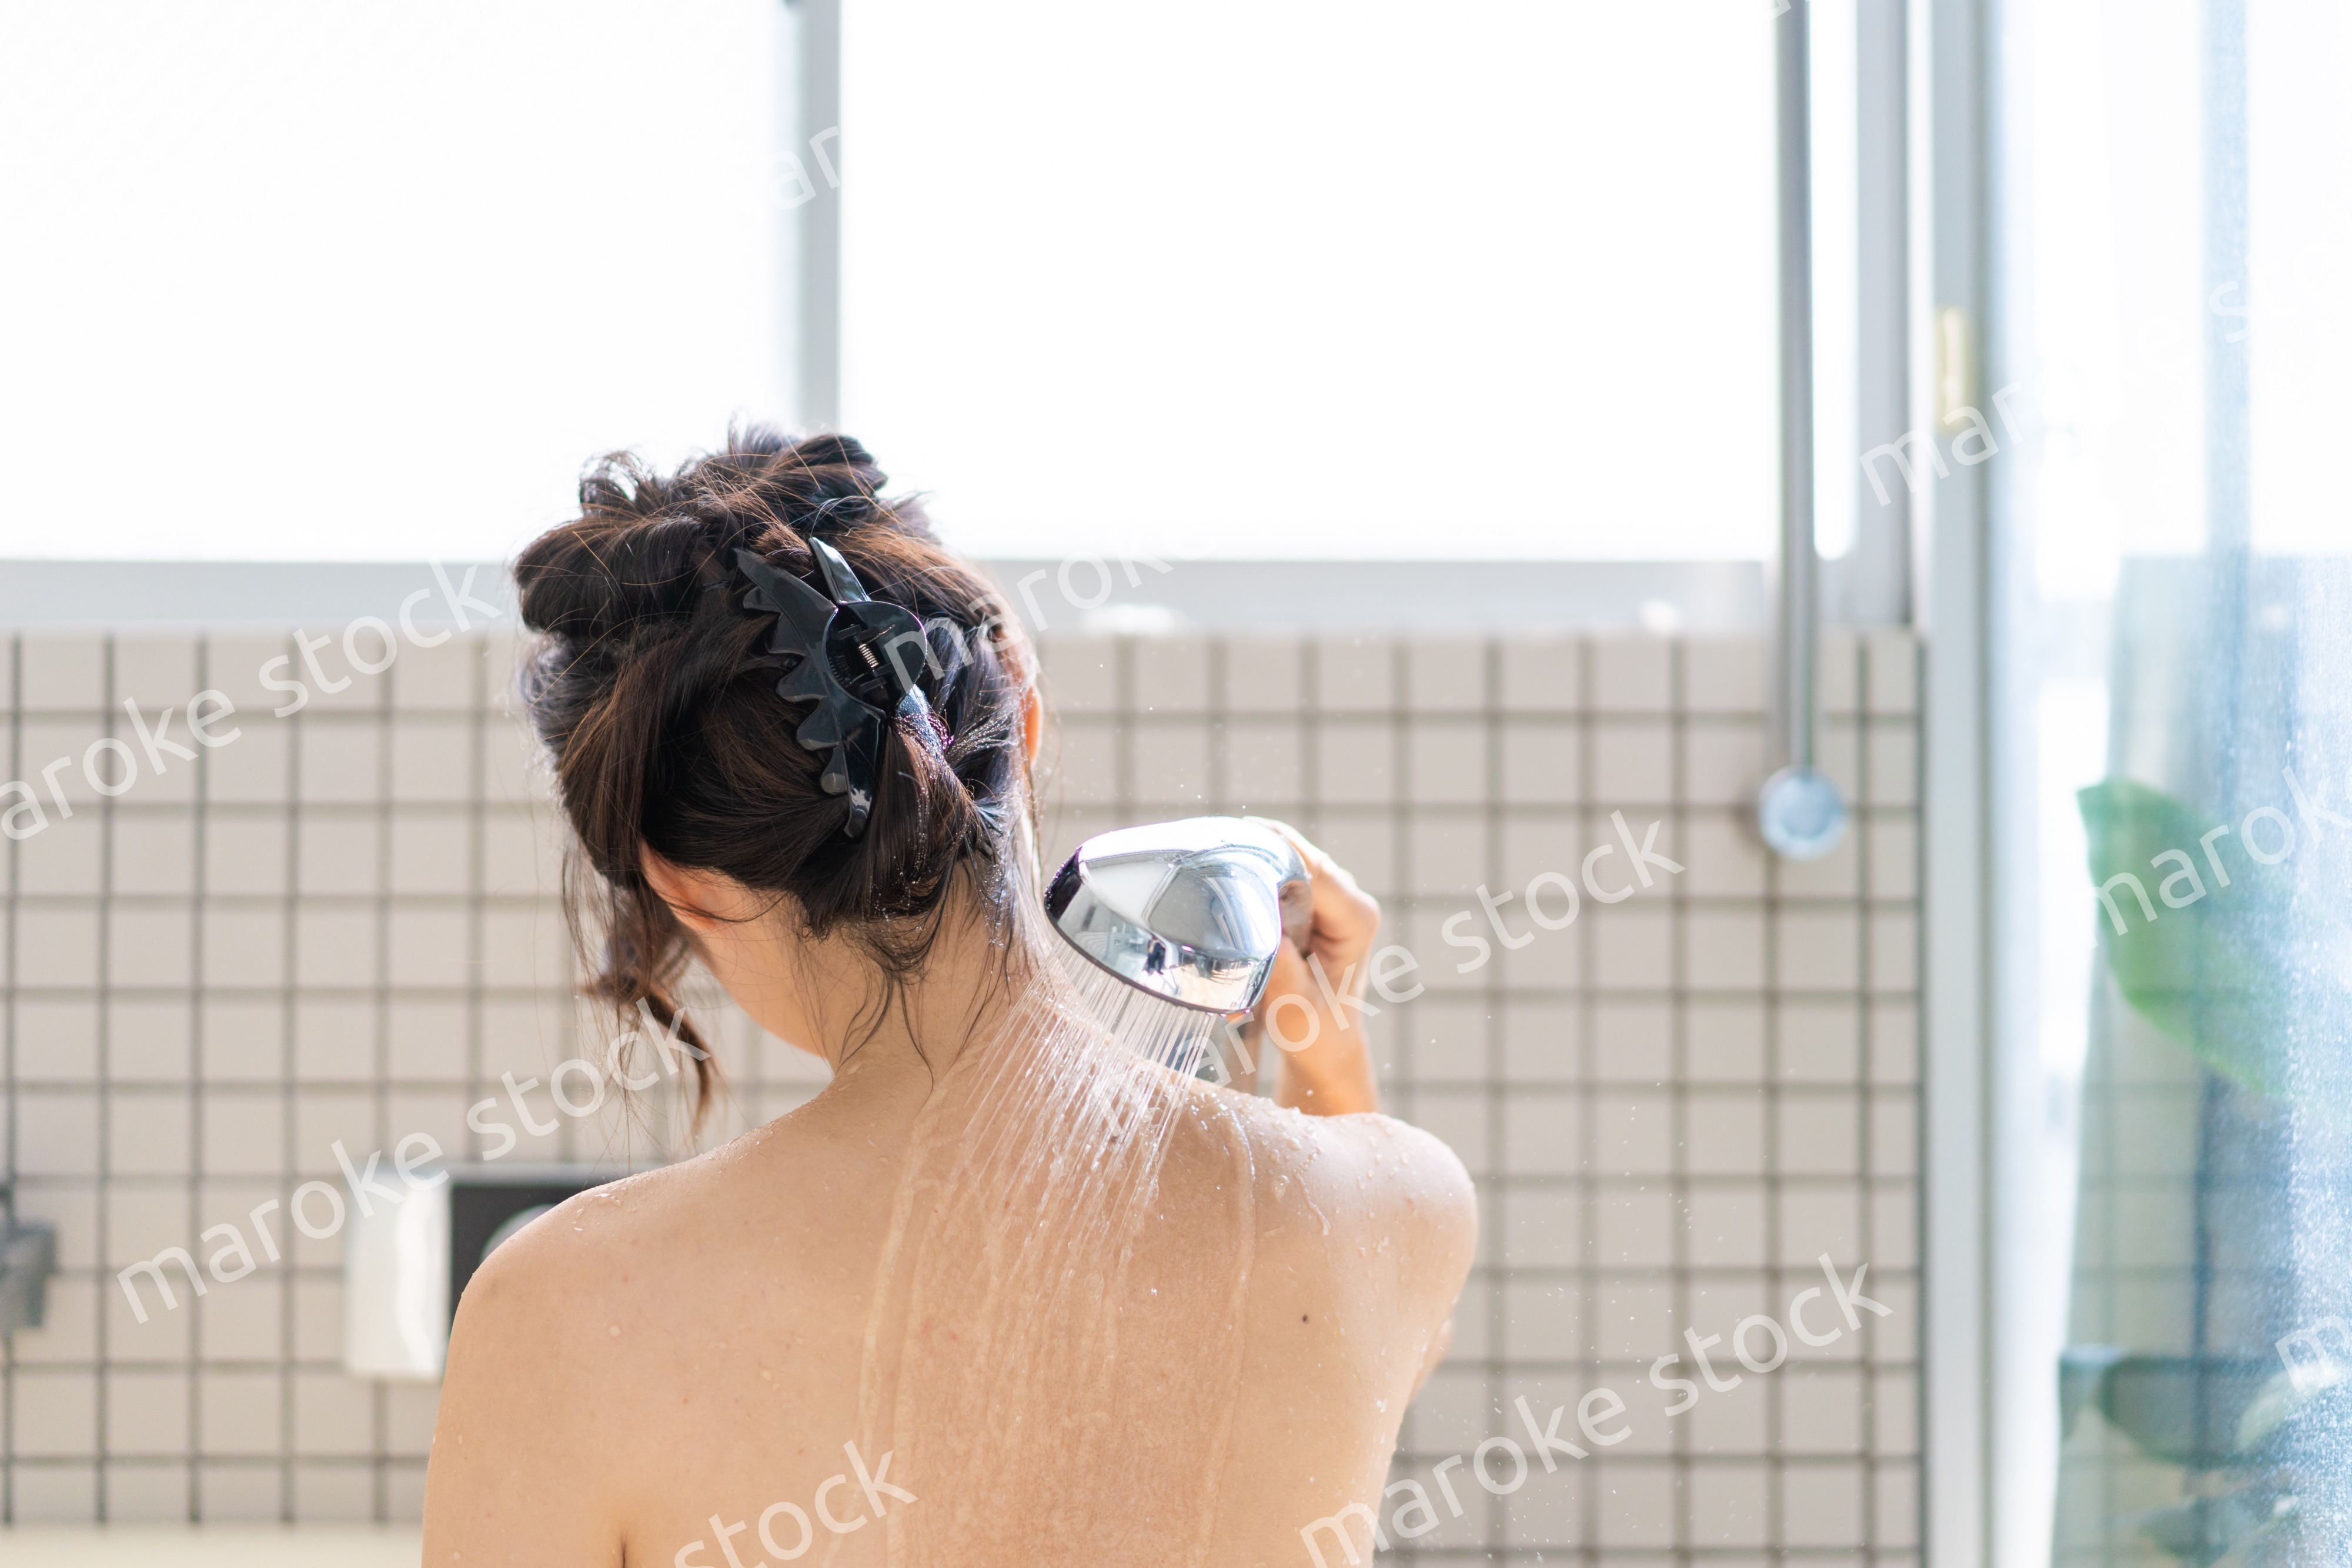 お風呂でシャワーを浴びる若い女性 Maroke Stock｜写真素材をフォトグラファーから直接購入できるストックフォトサイト